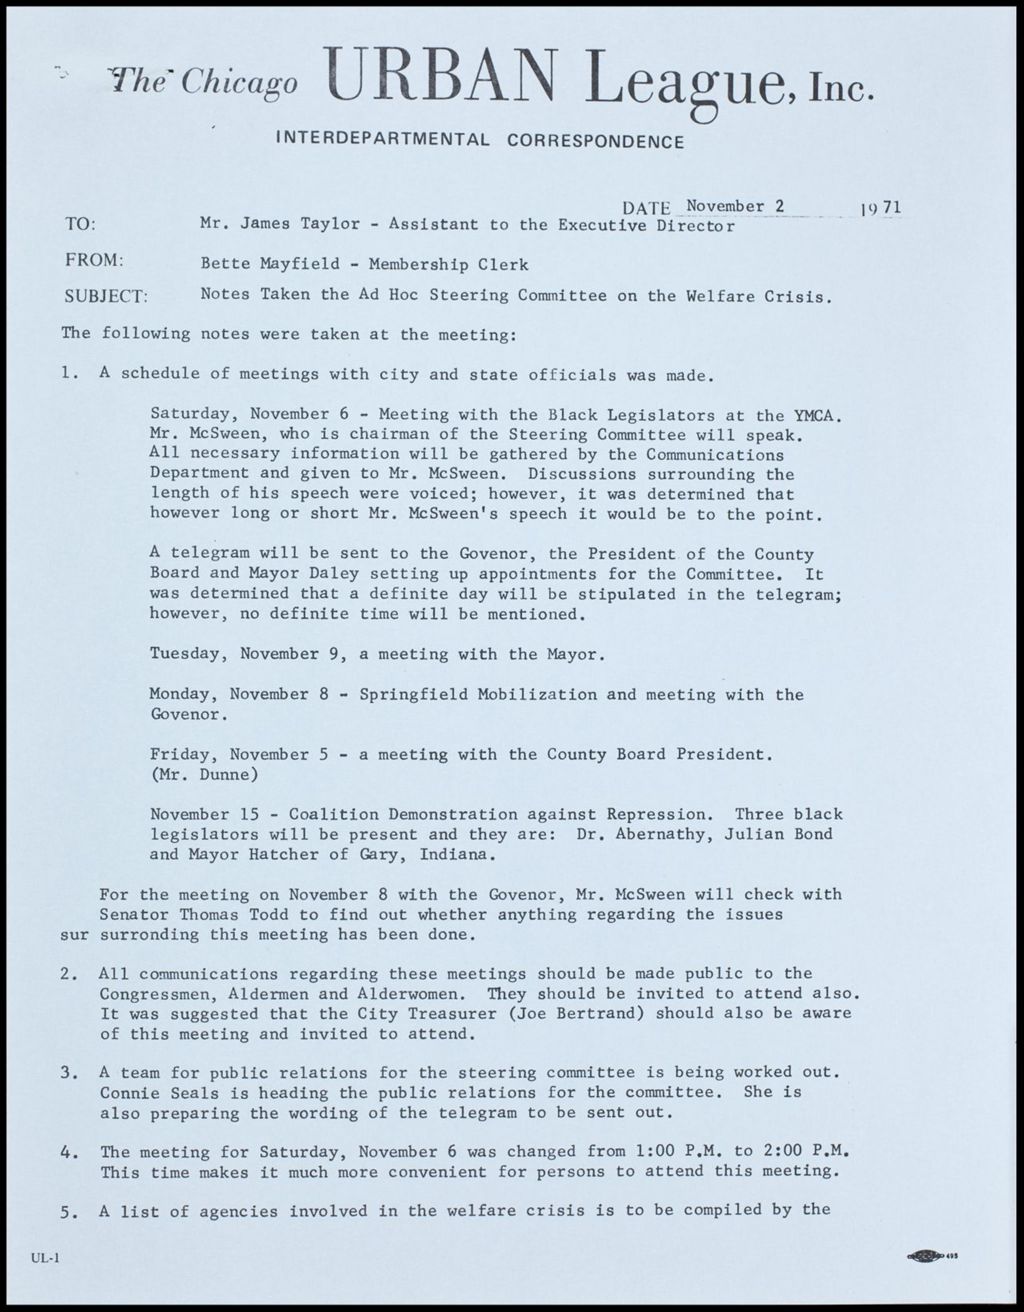 Miniature of Ad Hoc Committee on Welfare Crisis, 1971 (Folder I-3012)